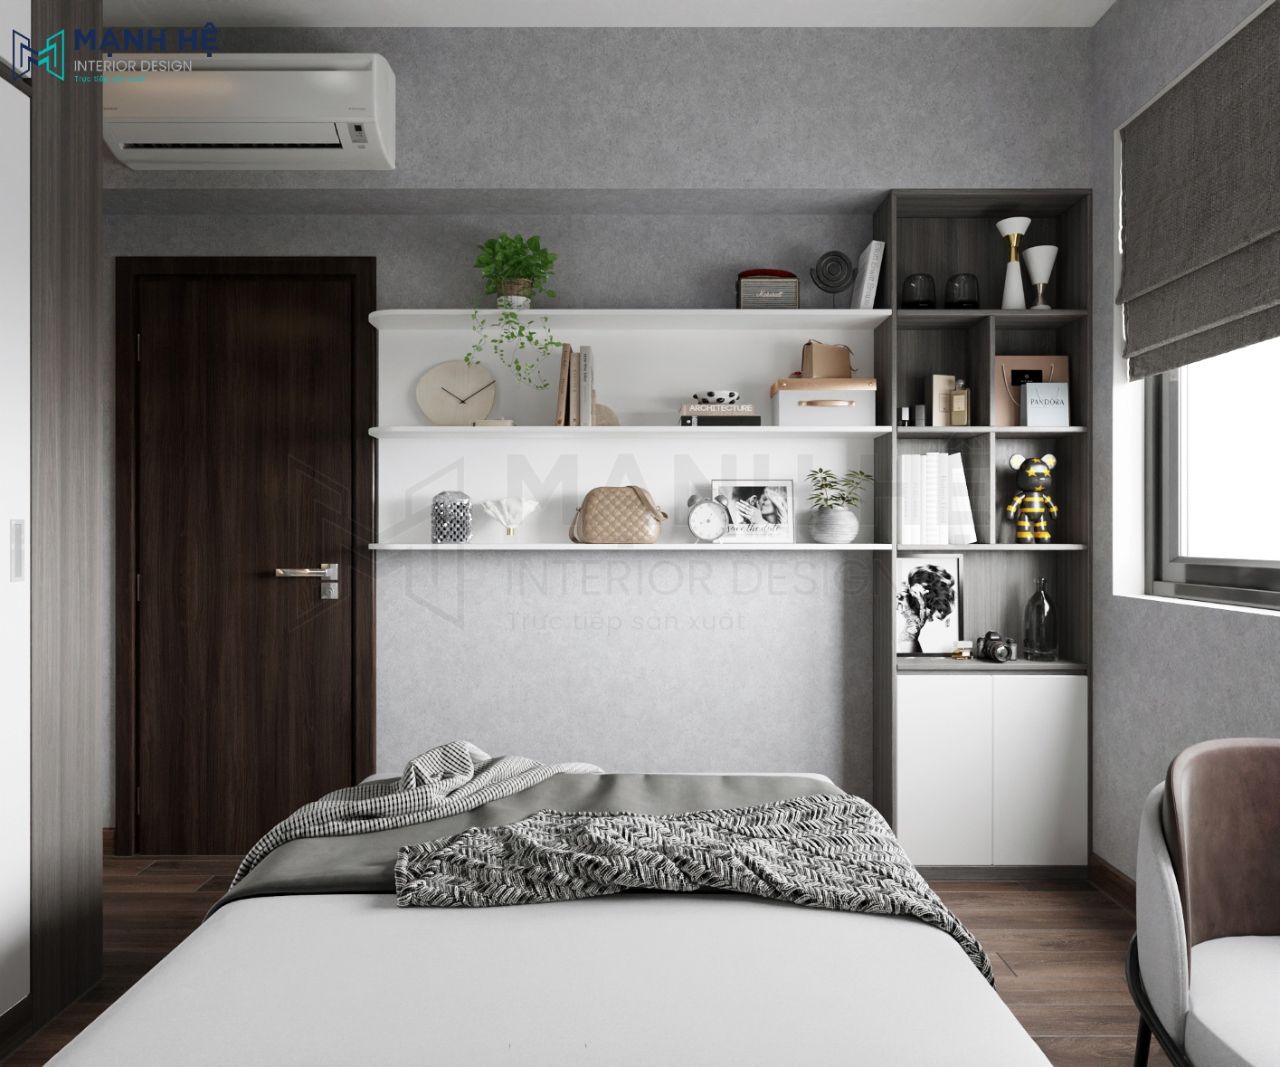 Tủ đựng đồ trang trí đặt phía cuối giường giúp tăng tính thẩm mỹ cho căn phòng